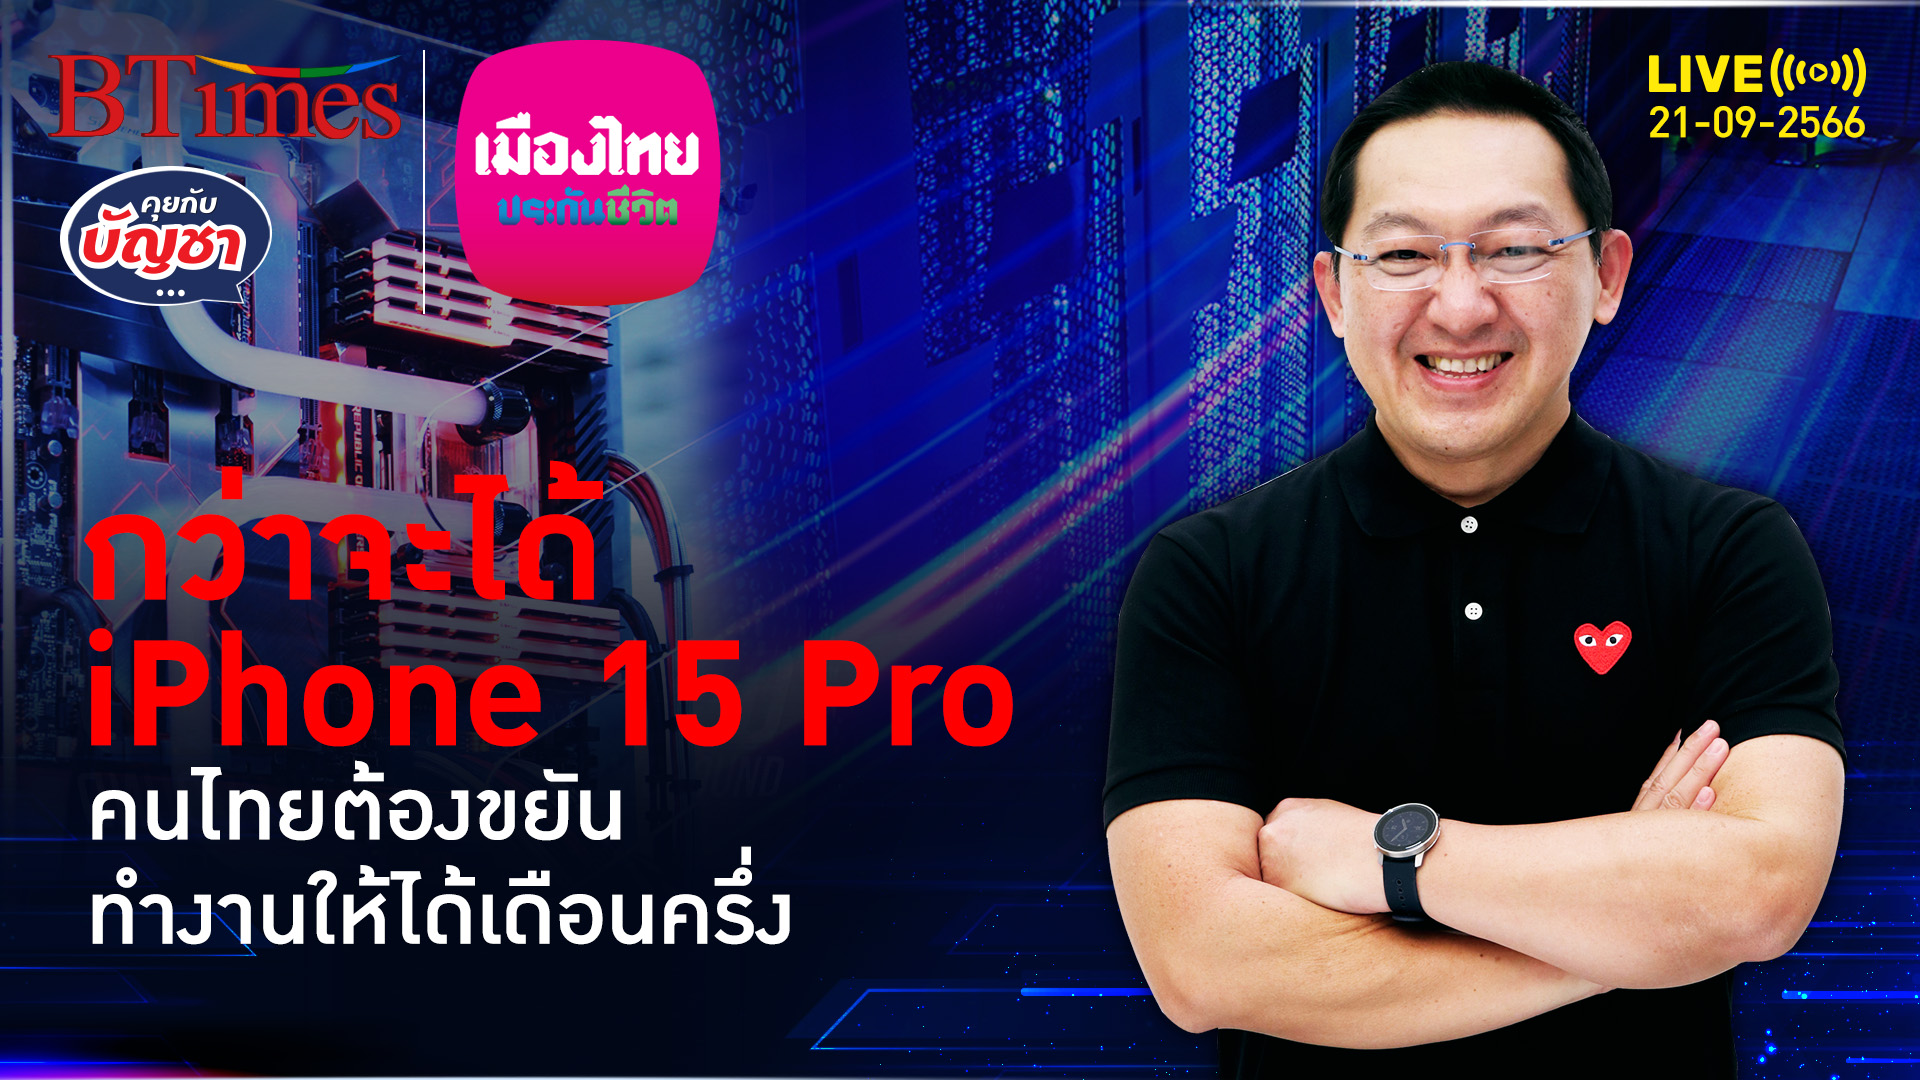 กำลังซื้อคนไทย กว่าจะได้ iPhone 15 Pro 1 เครื่อง ต้องทำงาน 1 เดือนครึ่ง | คุยกับบัญชา l 21 ก.ย. 66